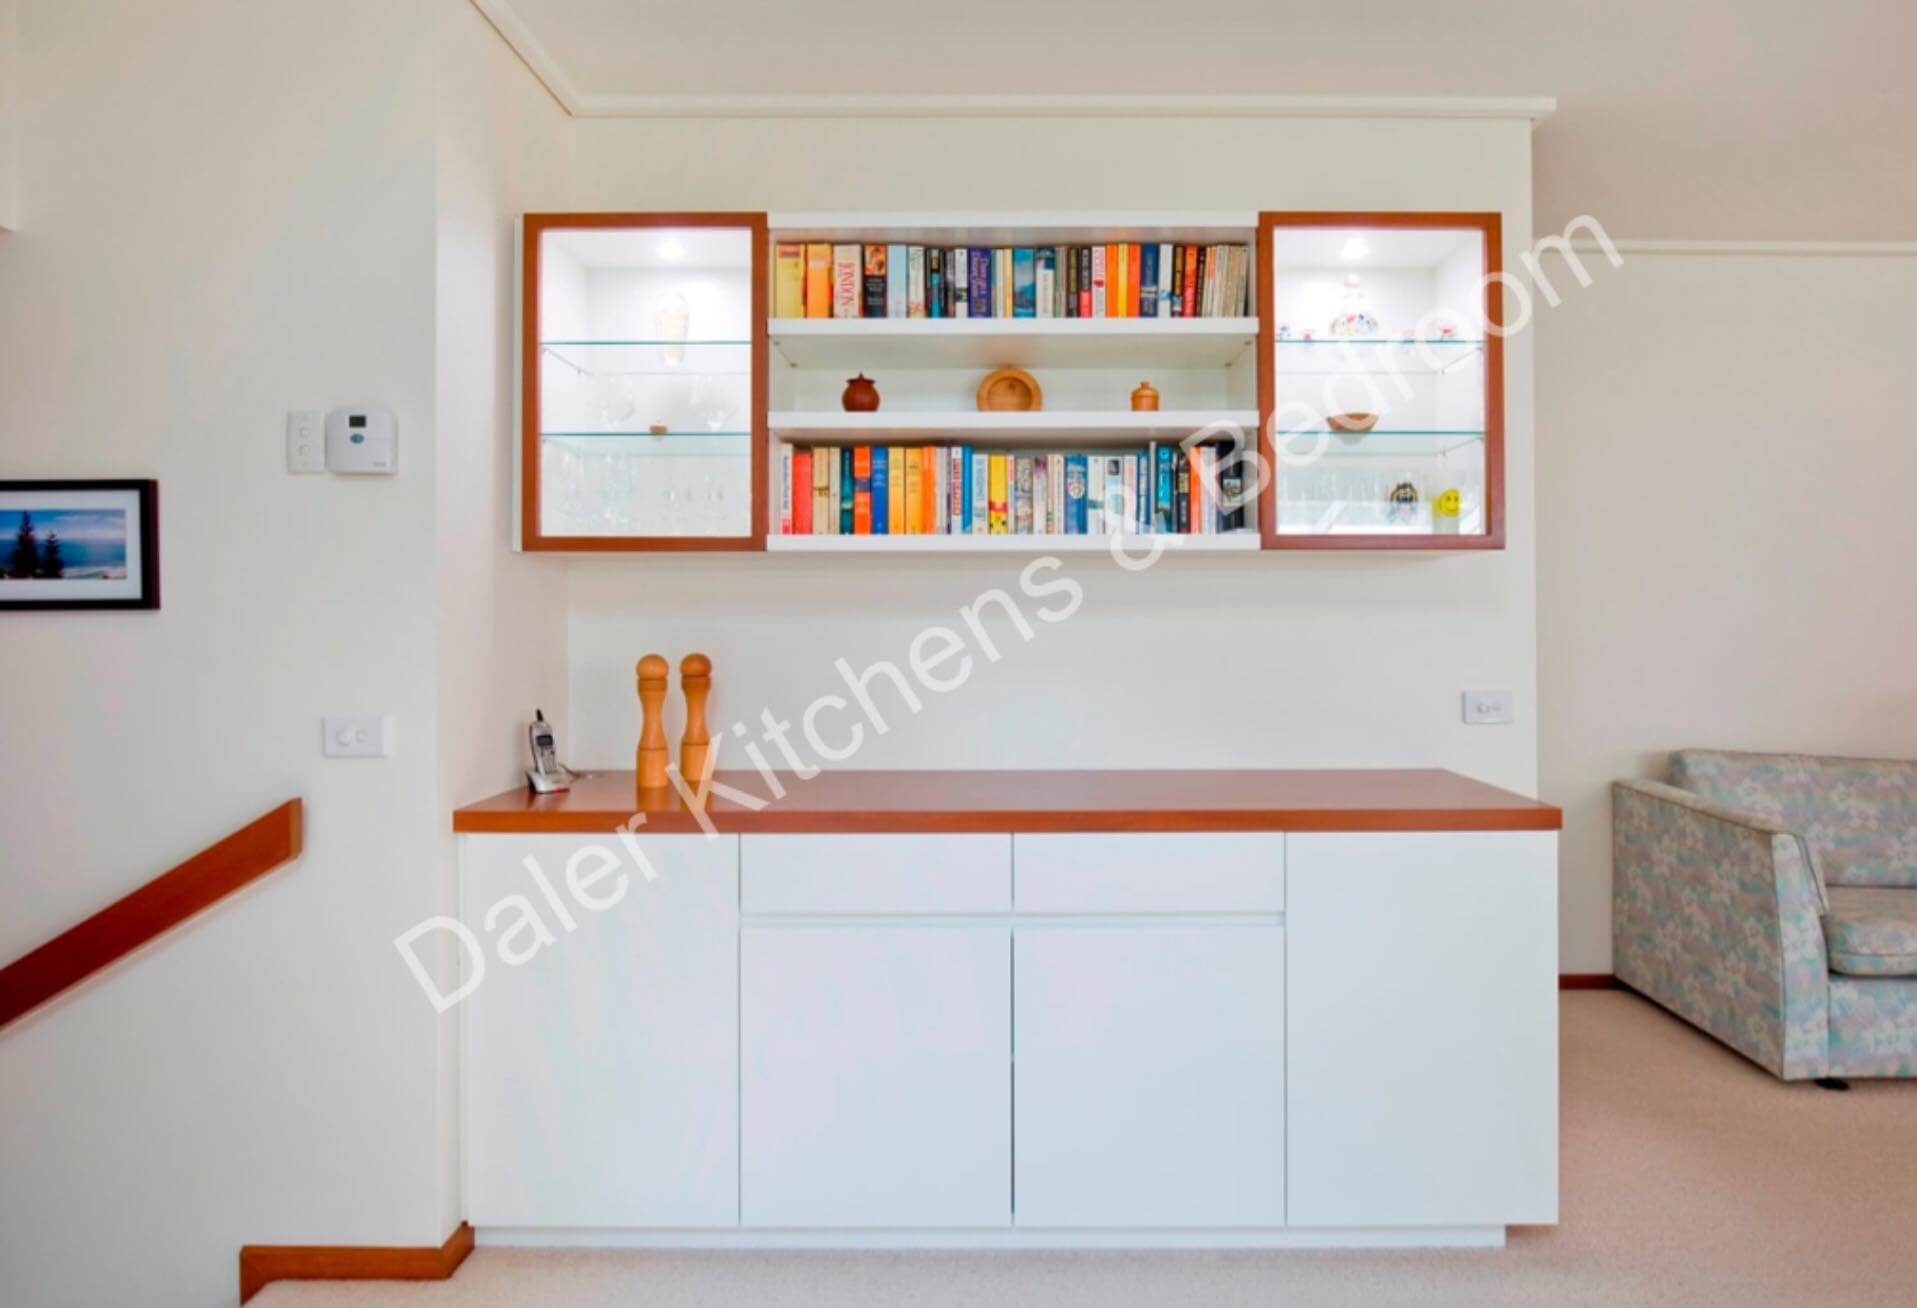 Living Room Bespoke Furniture Installation Cost London | Daler Kitchens